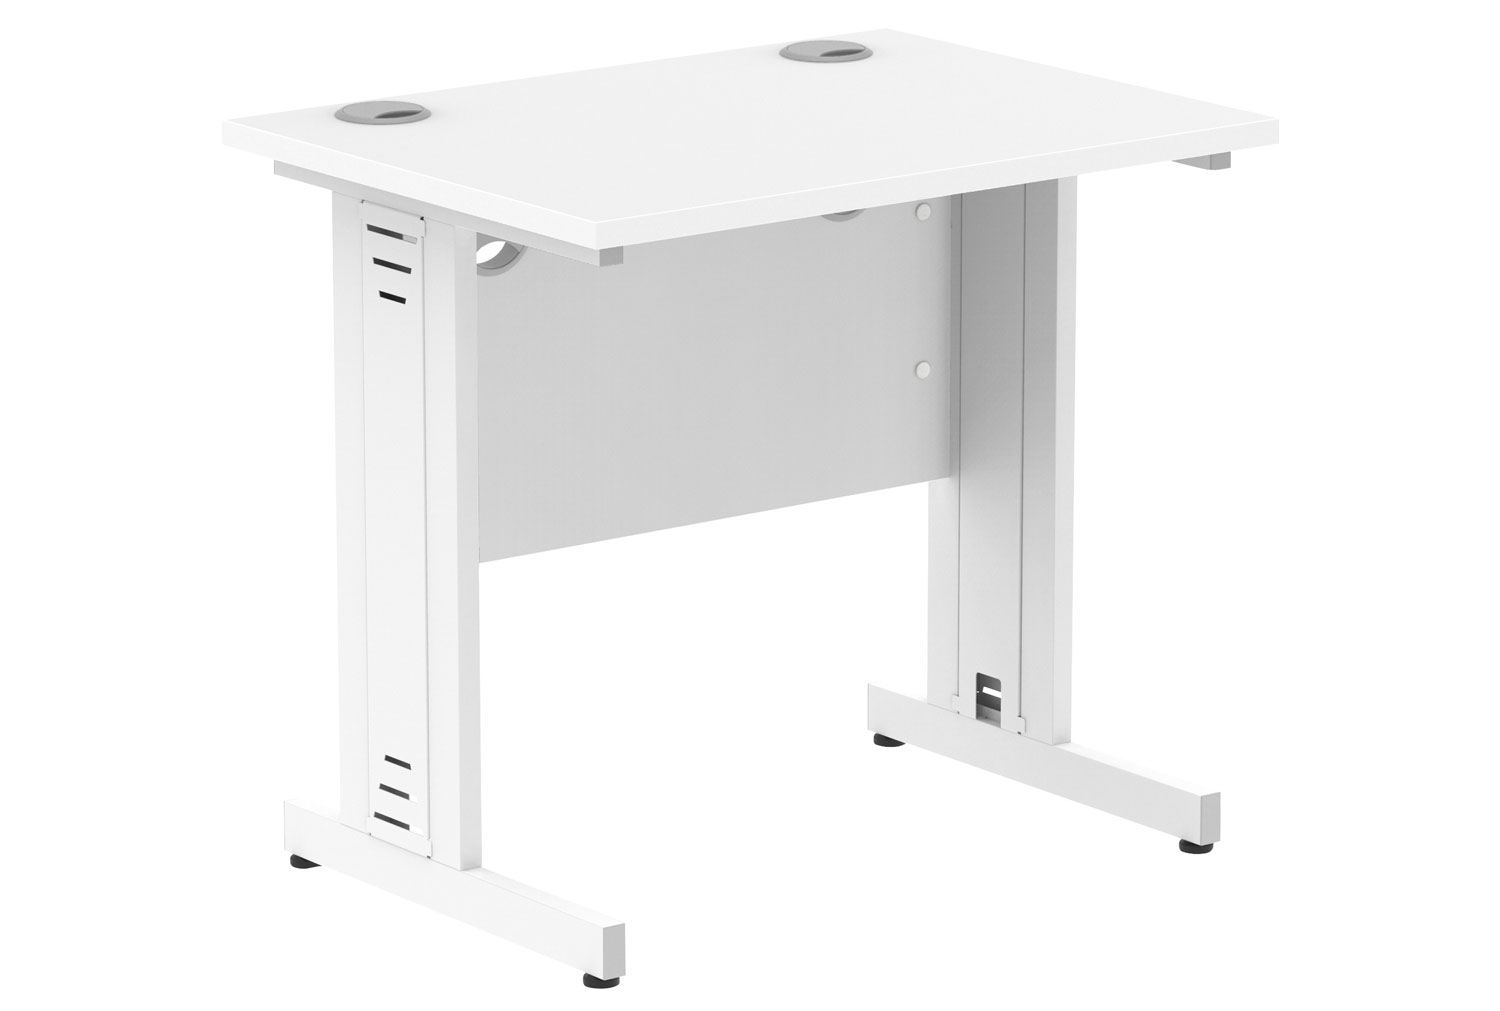 Vitali Deluxe Narrow Rectangular Office Desk (White Legs), 80wx60dx73h (cm), White